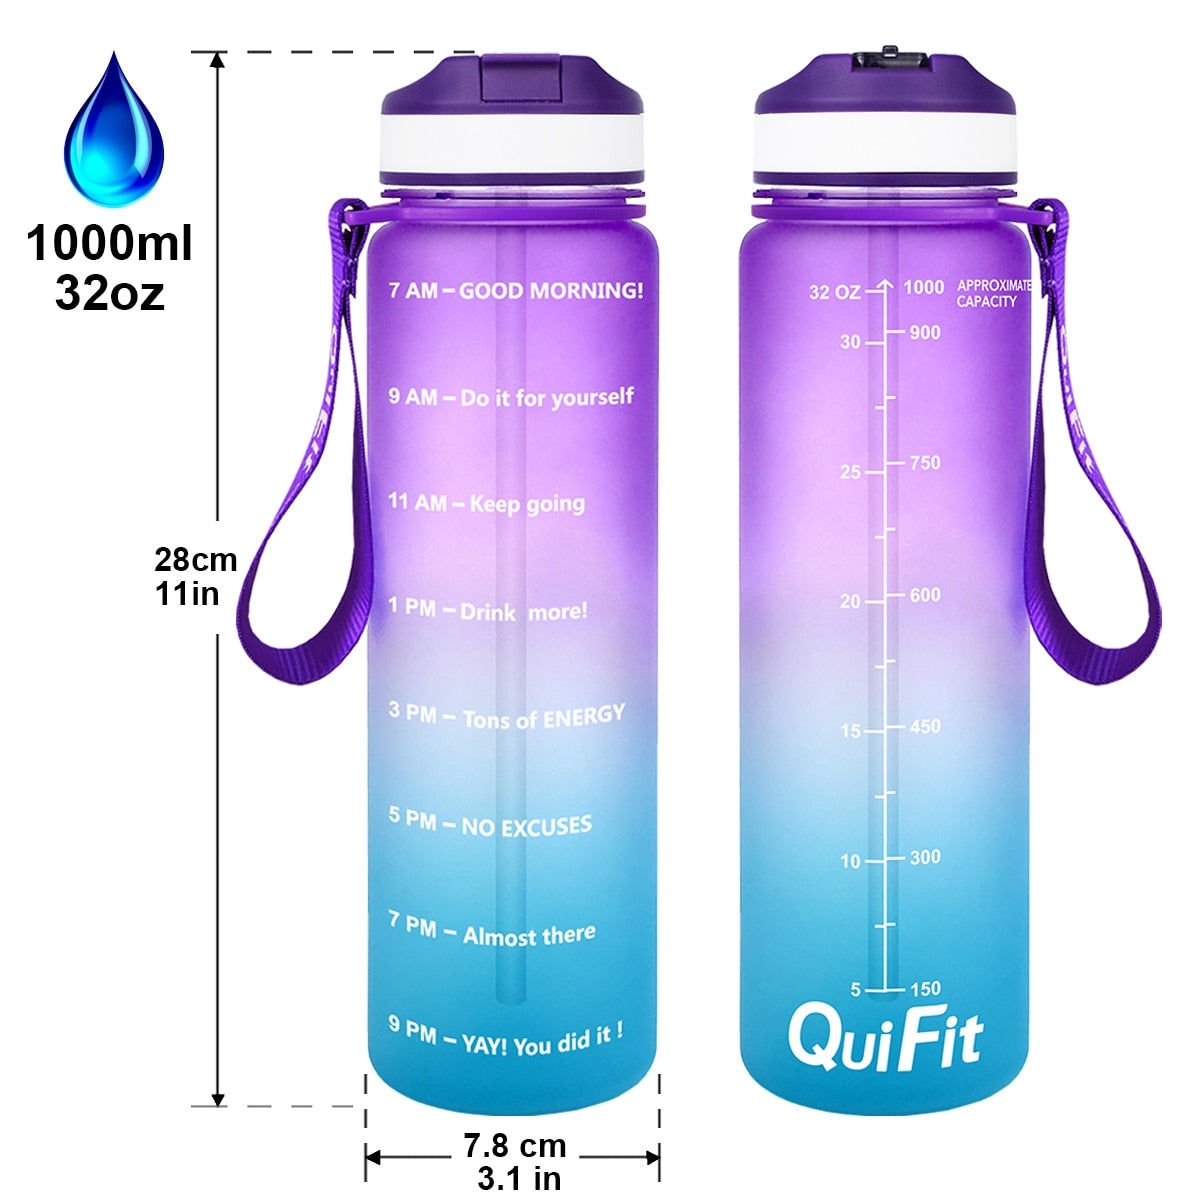 Eine lila Farbverlauf-Sporttrinkflasche mit motivierenden Zeitmarkierungen, angegebenen Dimensionen von 28cm Hoehe und 7.8cm Durchmesser, einem Fassungsvermoegen von 1000ml und einer violetten Trageschlaufe. Oben ist ein Wassertroepfchen-Symbol mit der Aufschrift "1000ml", und unten rechts befindet sich das Markenlogo "QuiFit".